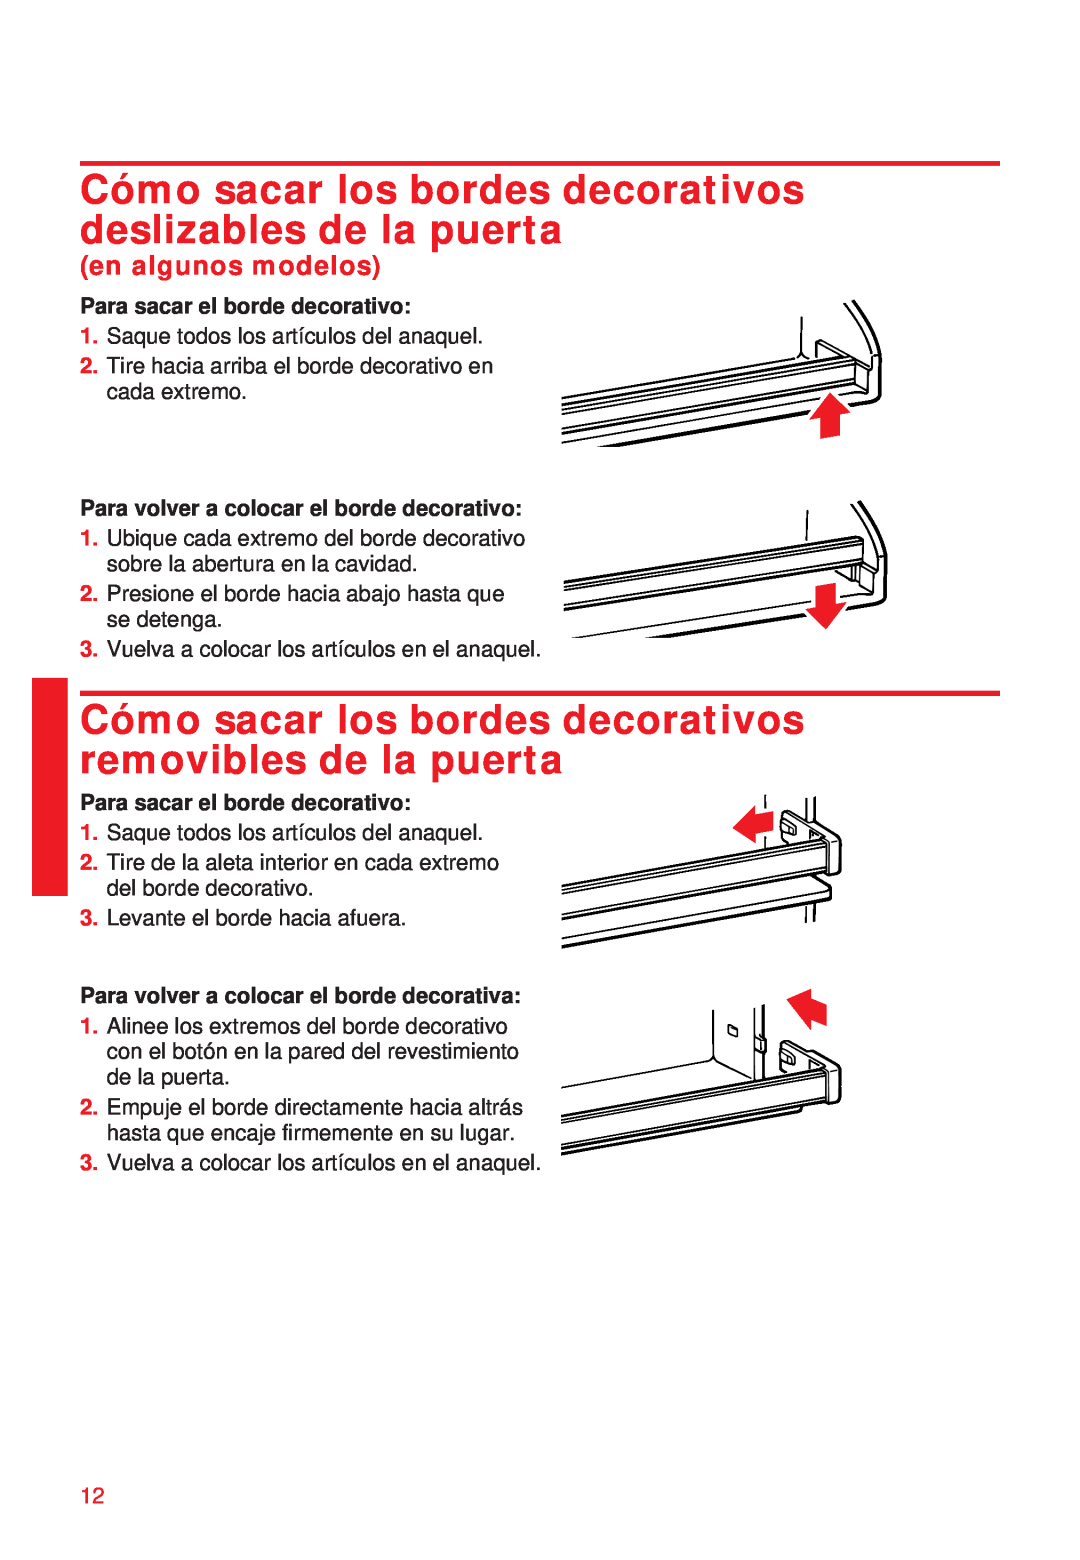 Whirlpool 2195258 manual Cómo sacar los bordes decorativos deslizables de la puerta, en algunos modelos 